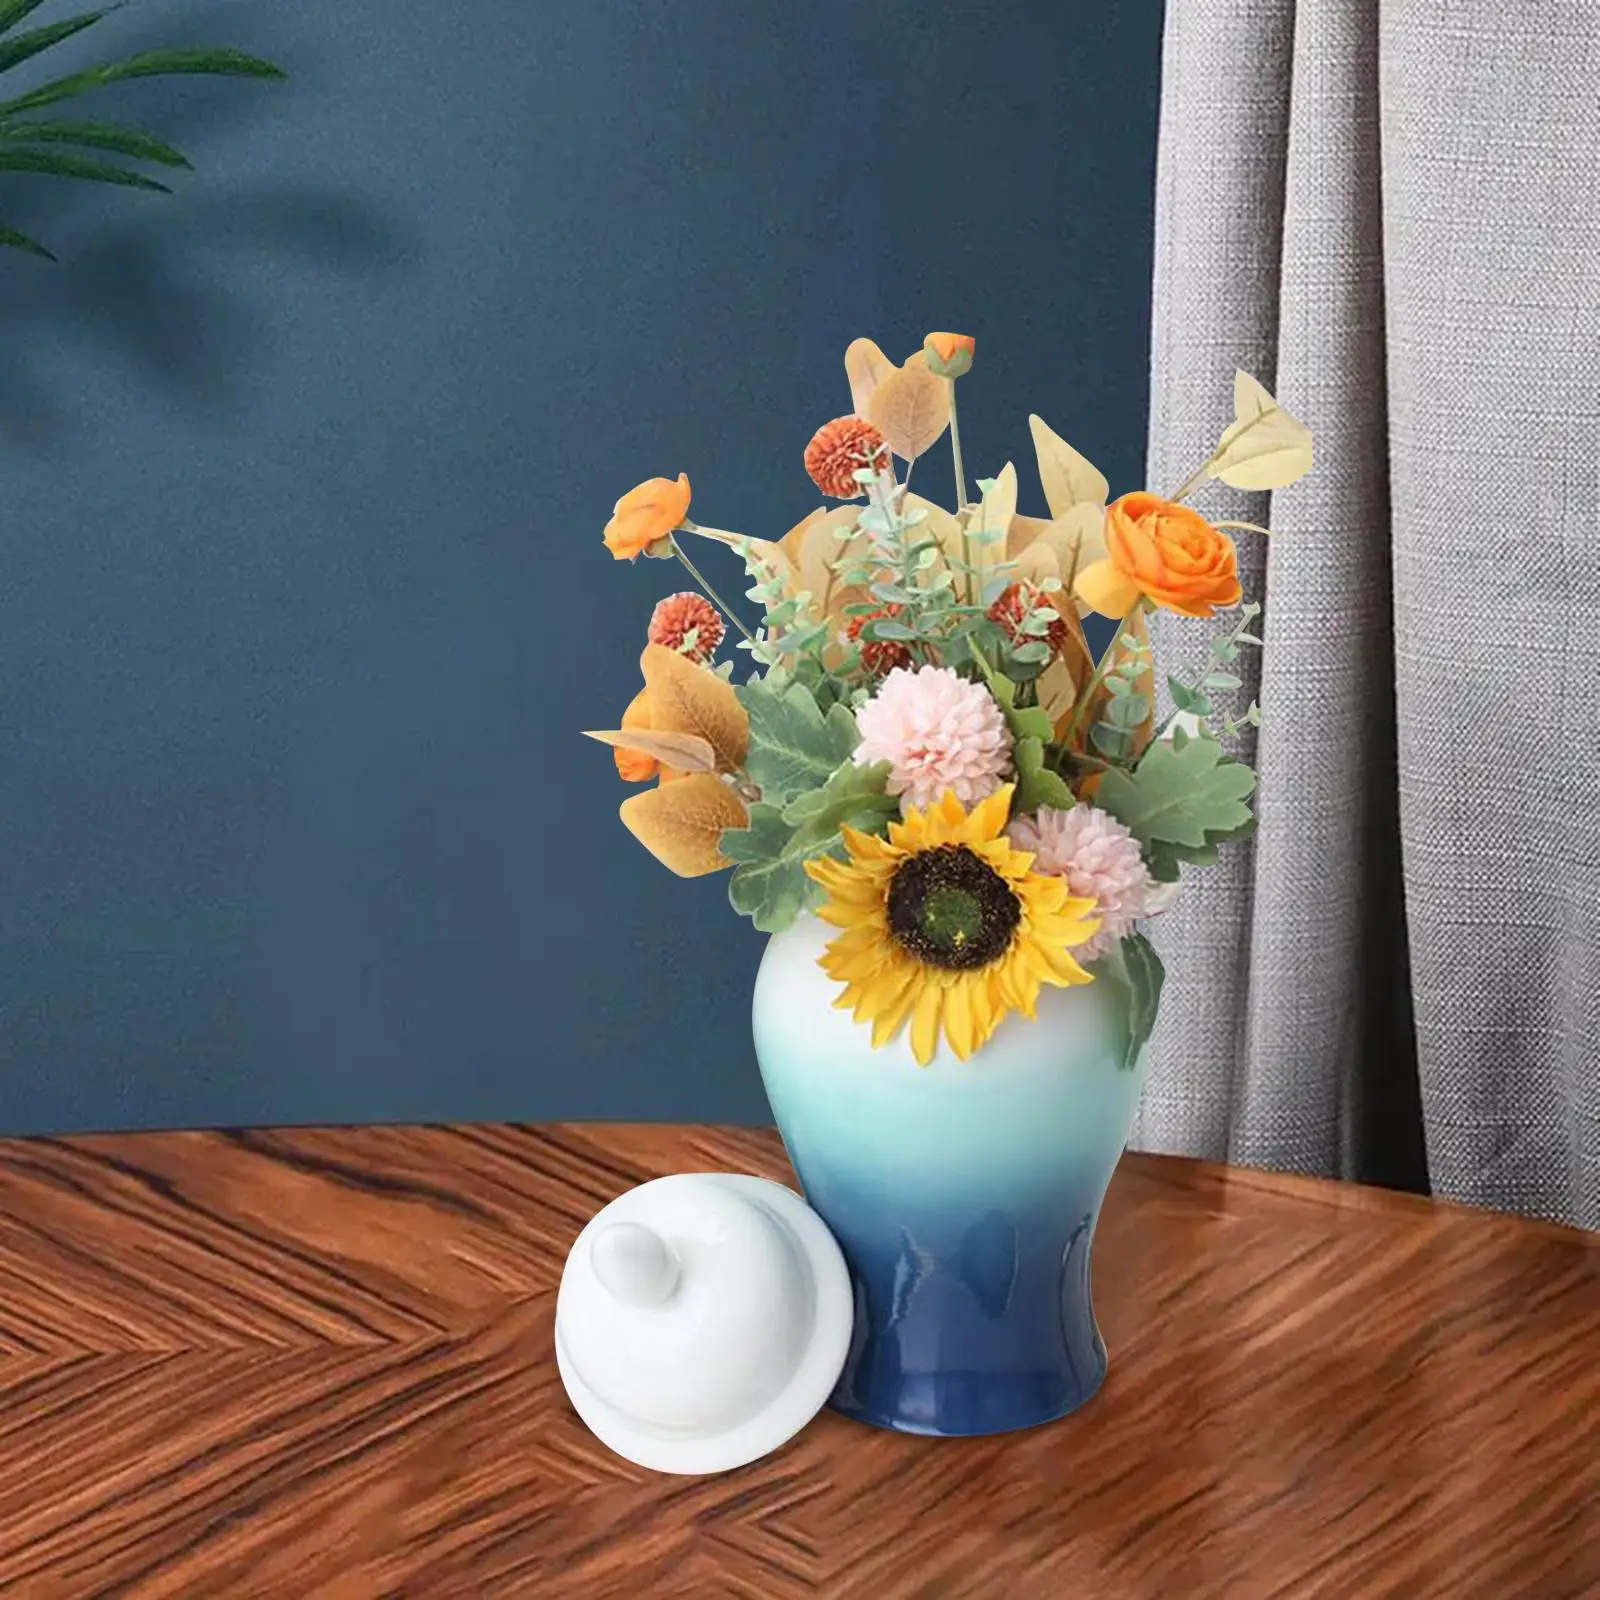 Porcelain Temple Ginger Jar Collection Desktop Ceramic Flower Vase